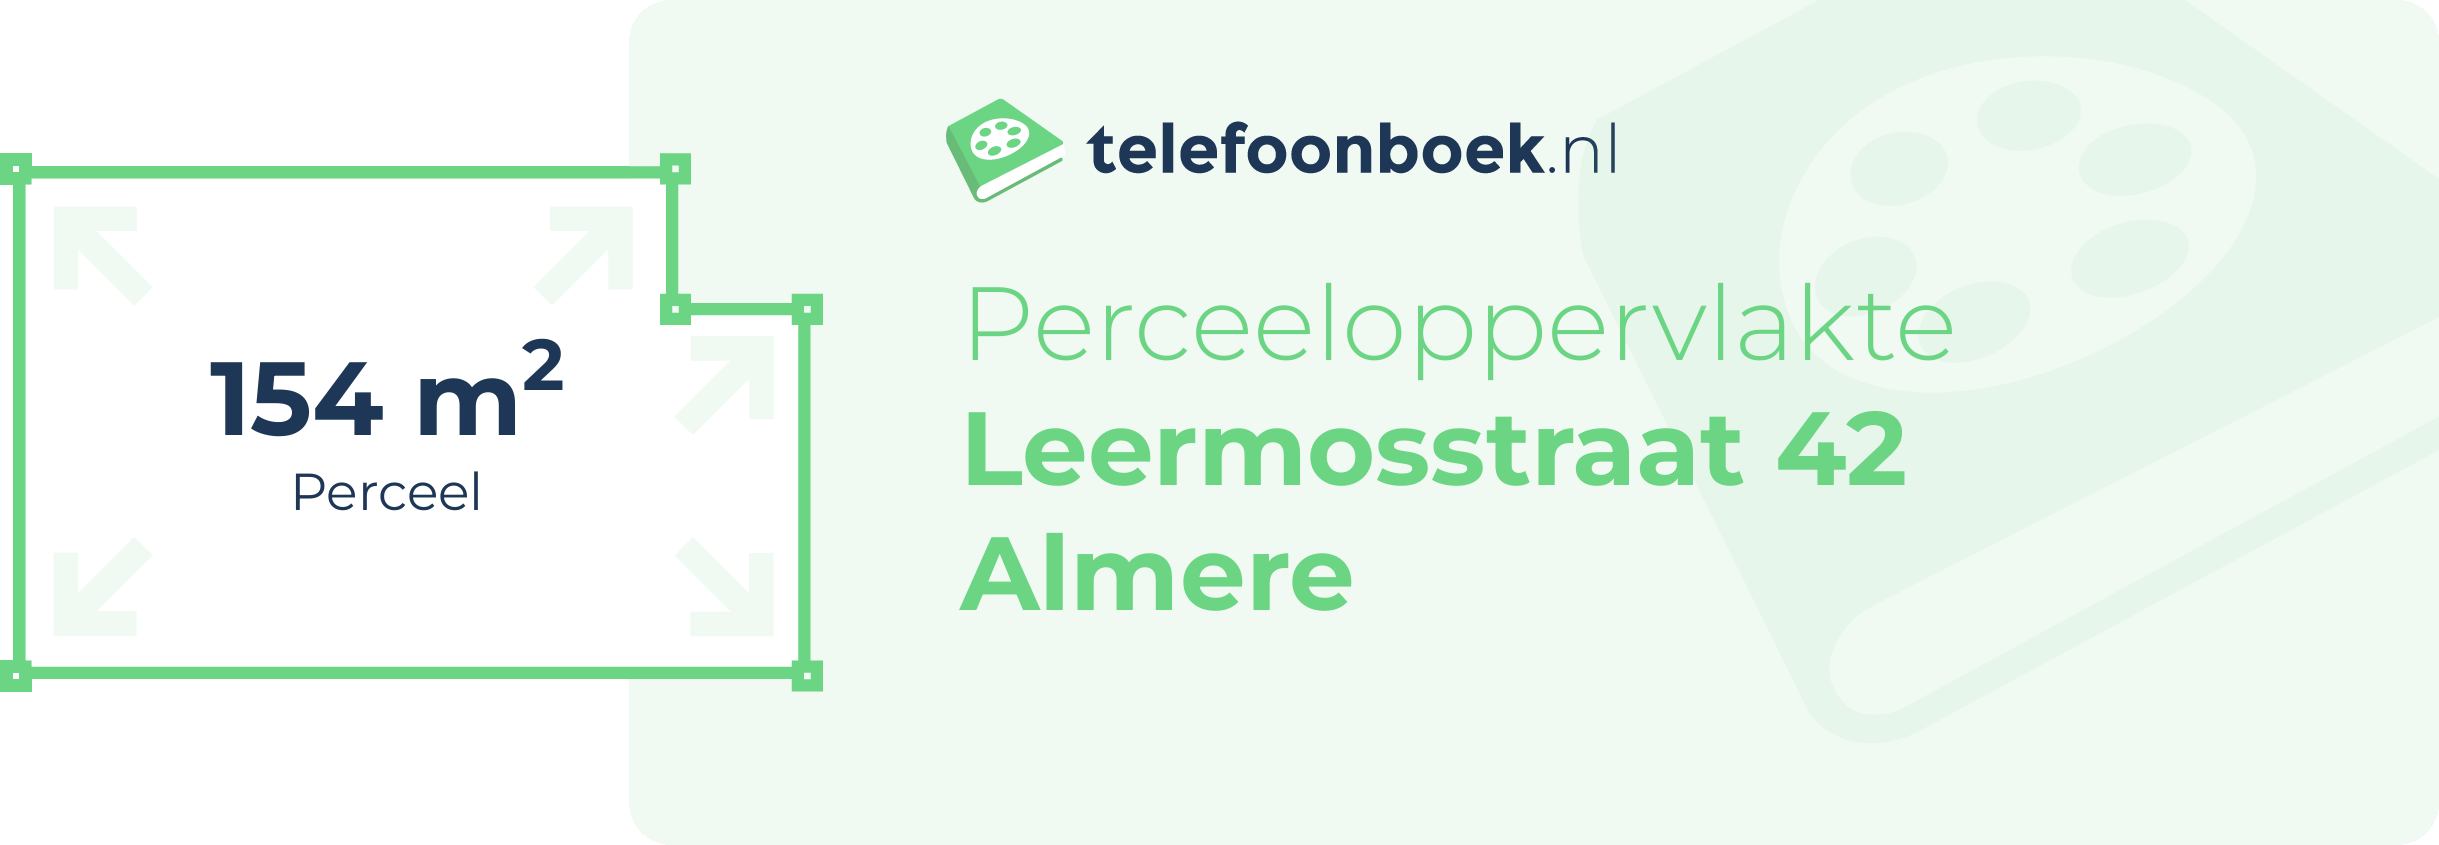 Perceeloppervlakte Leermosstraat 42 Almere